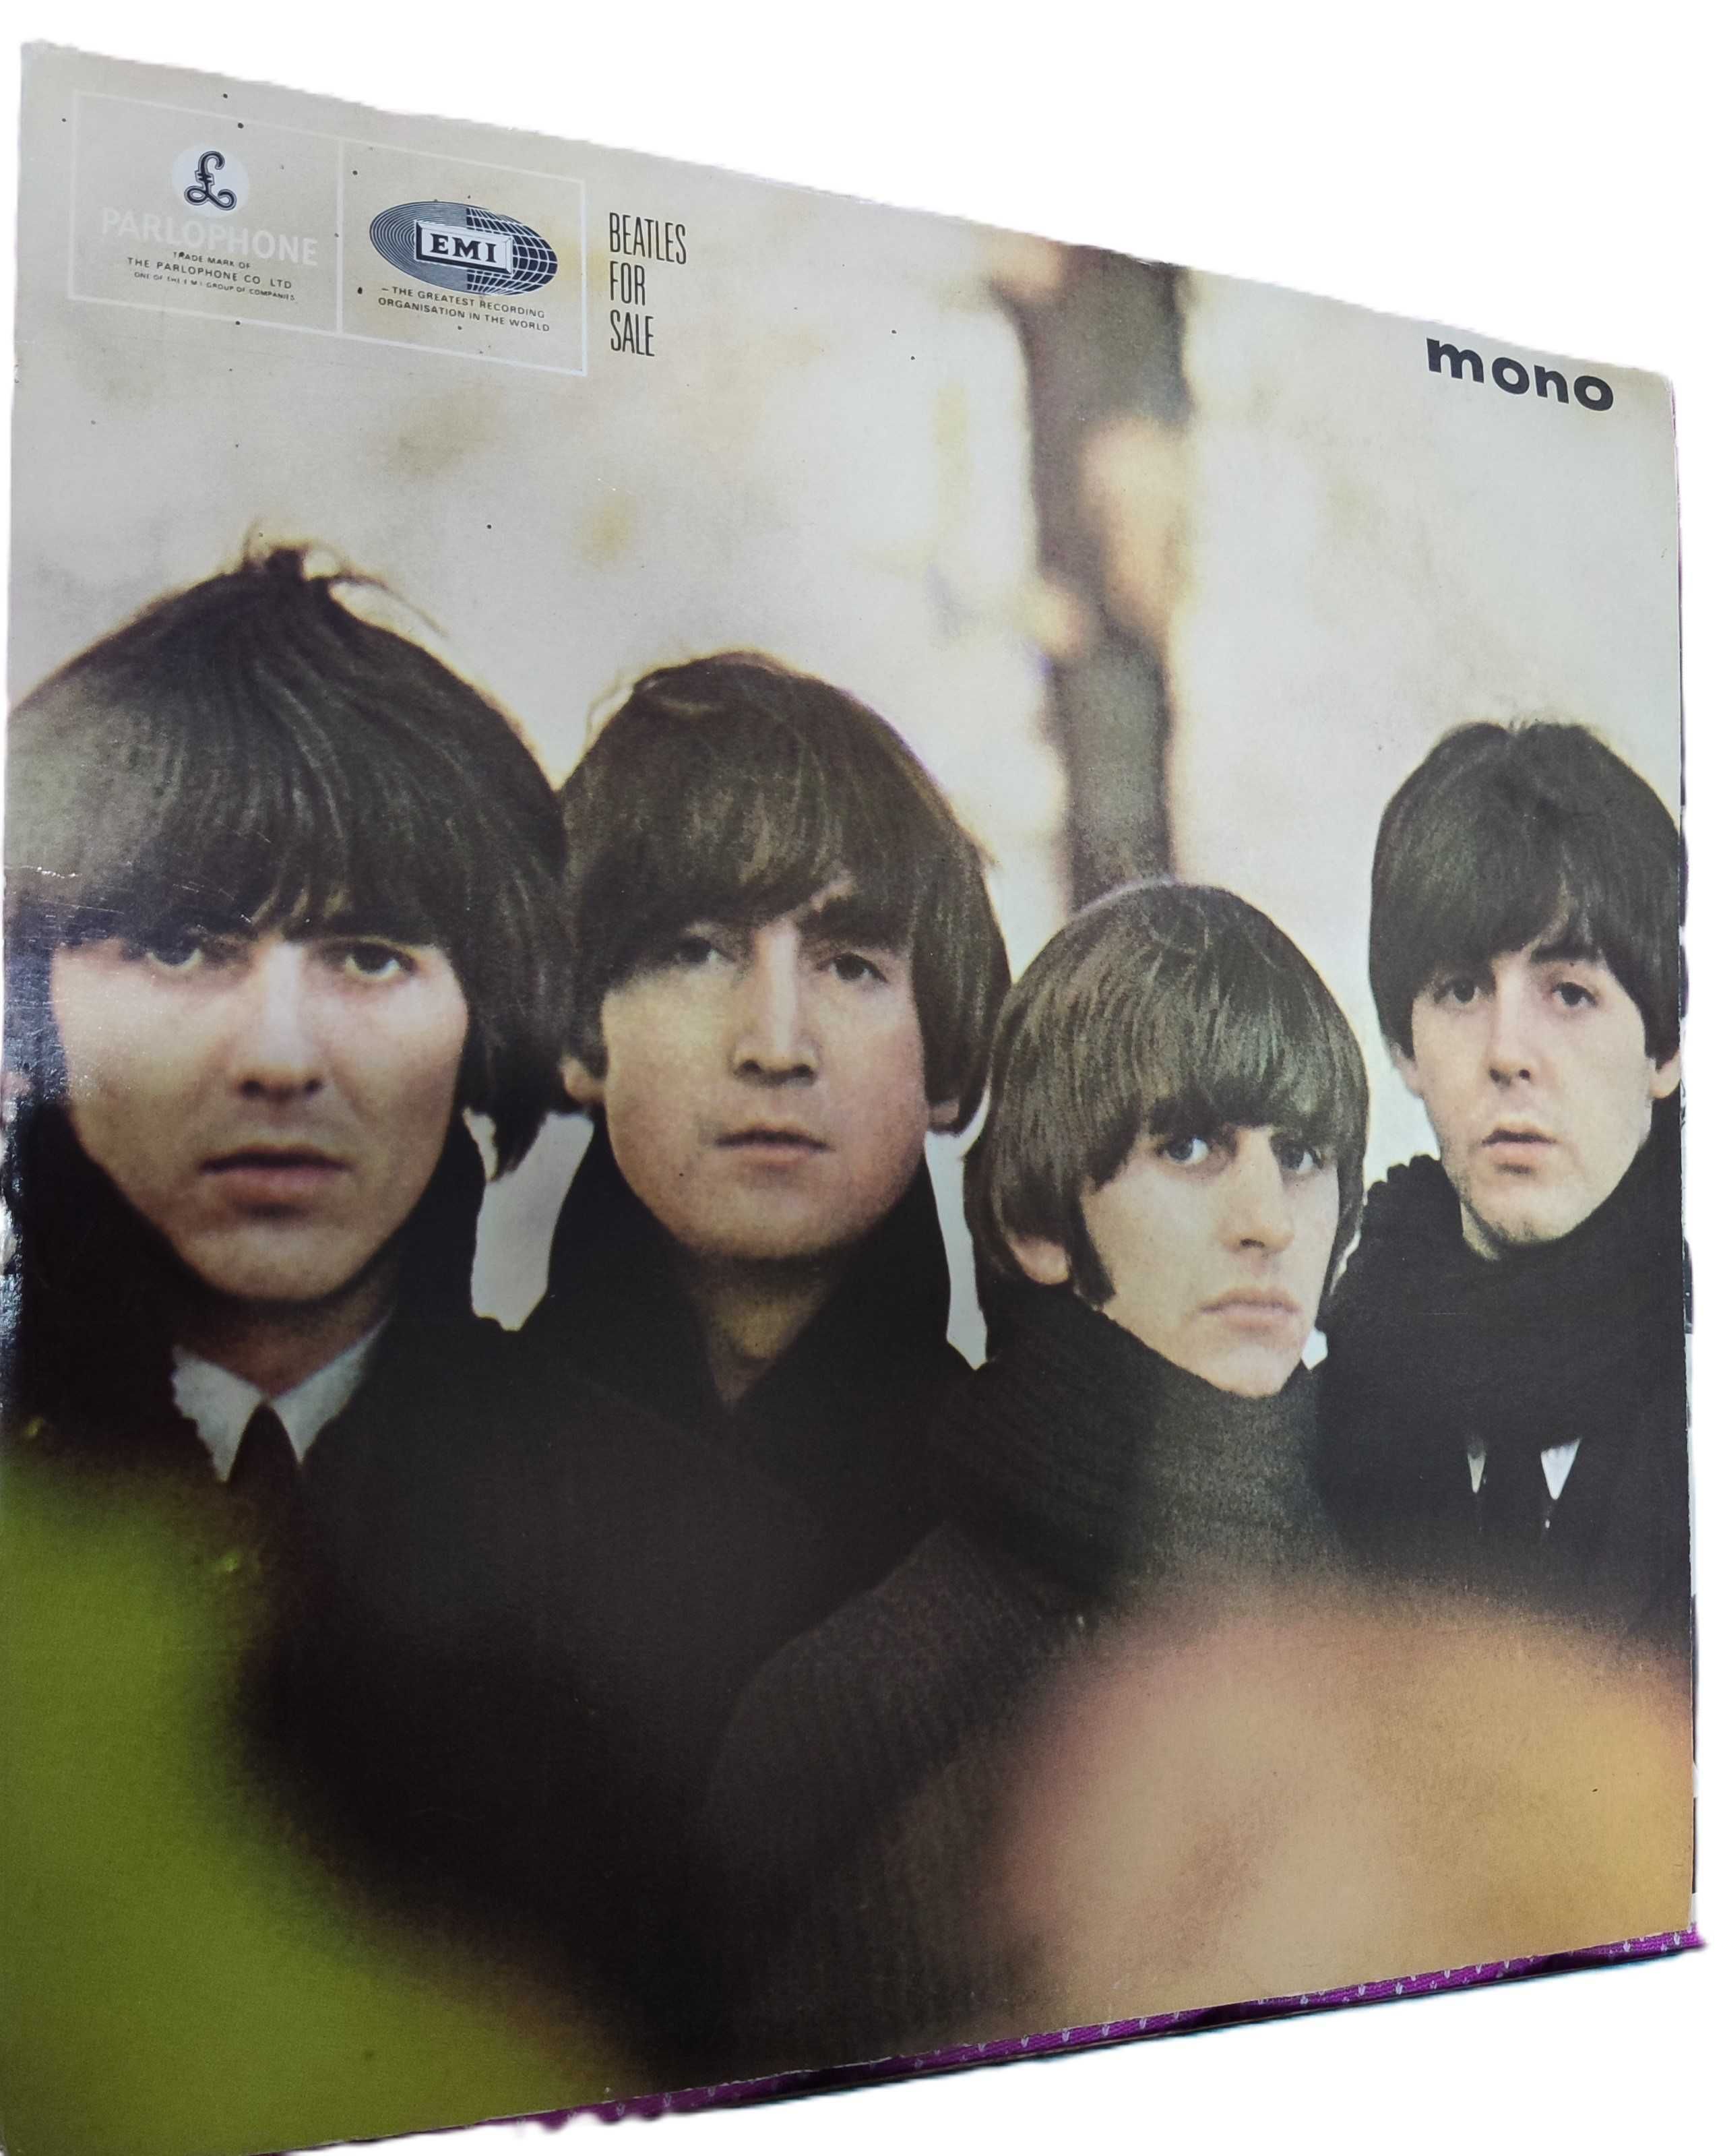 Álbum de Beatles "Beatles For Sale"